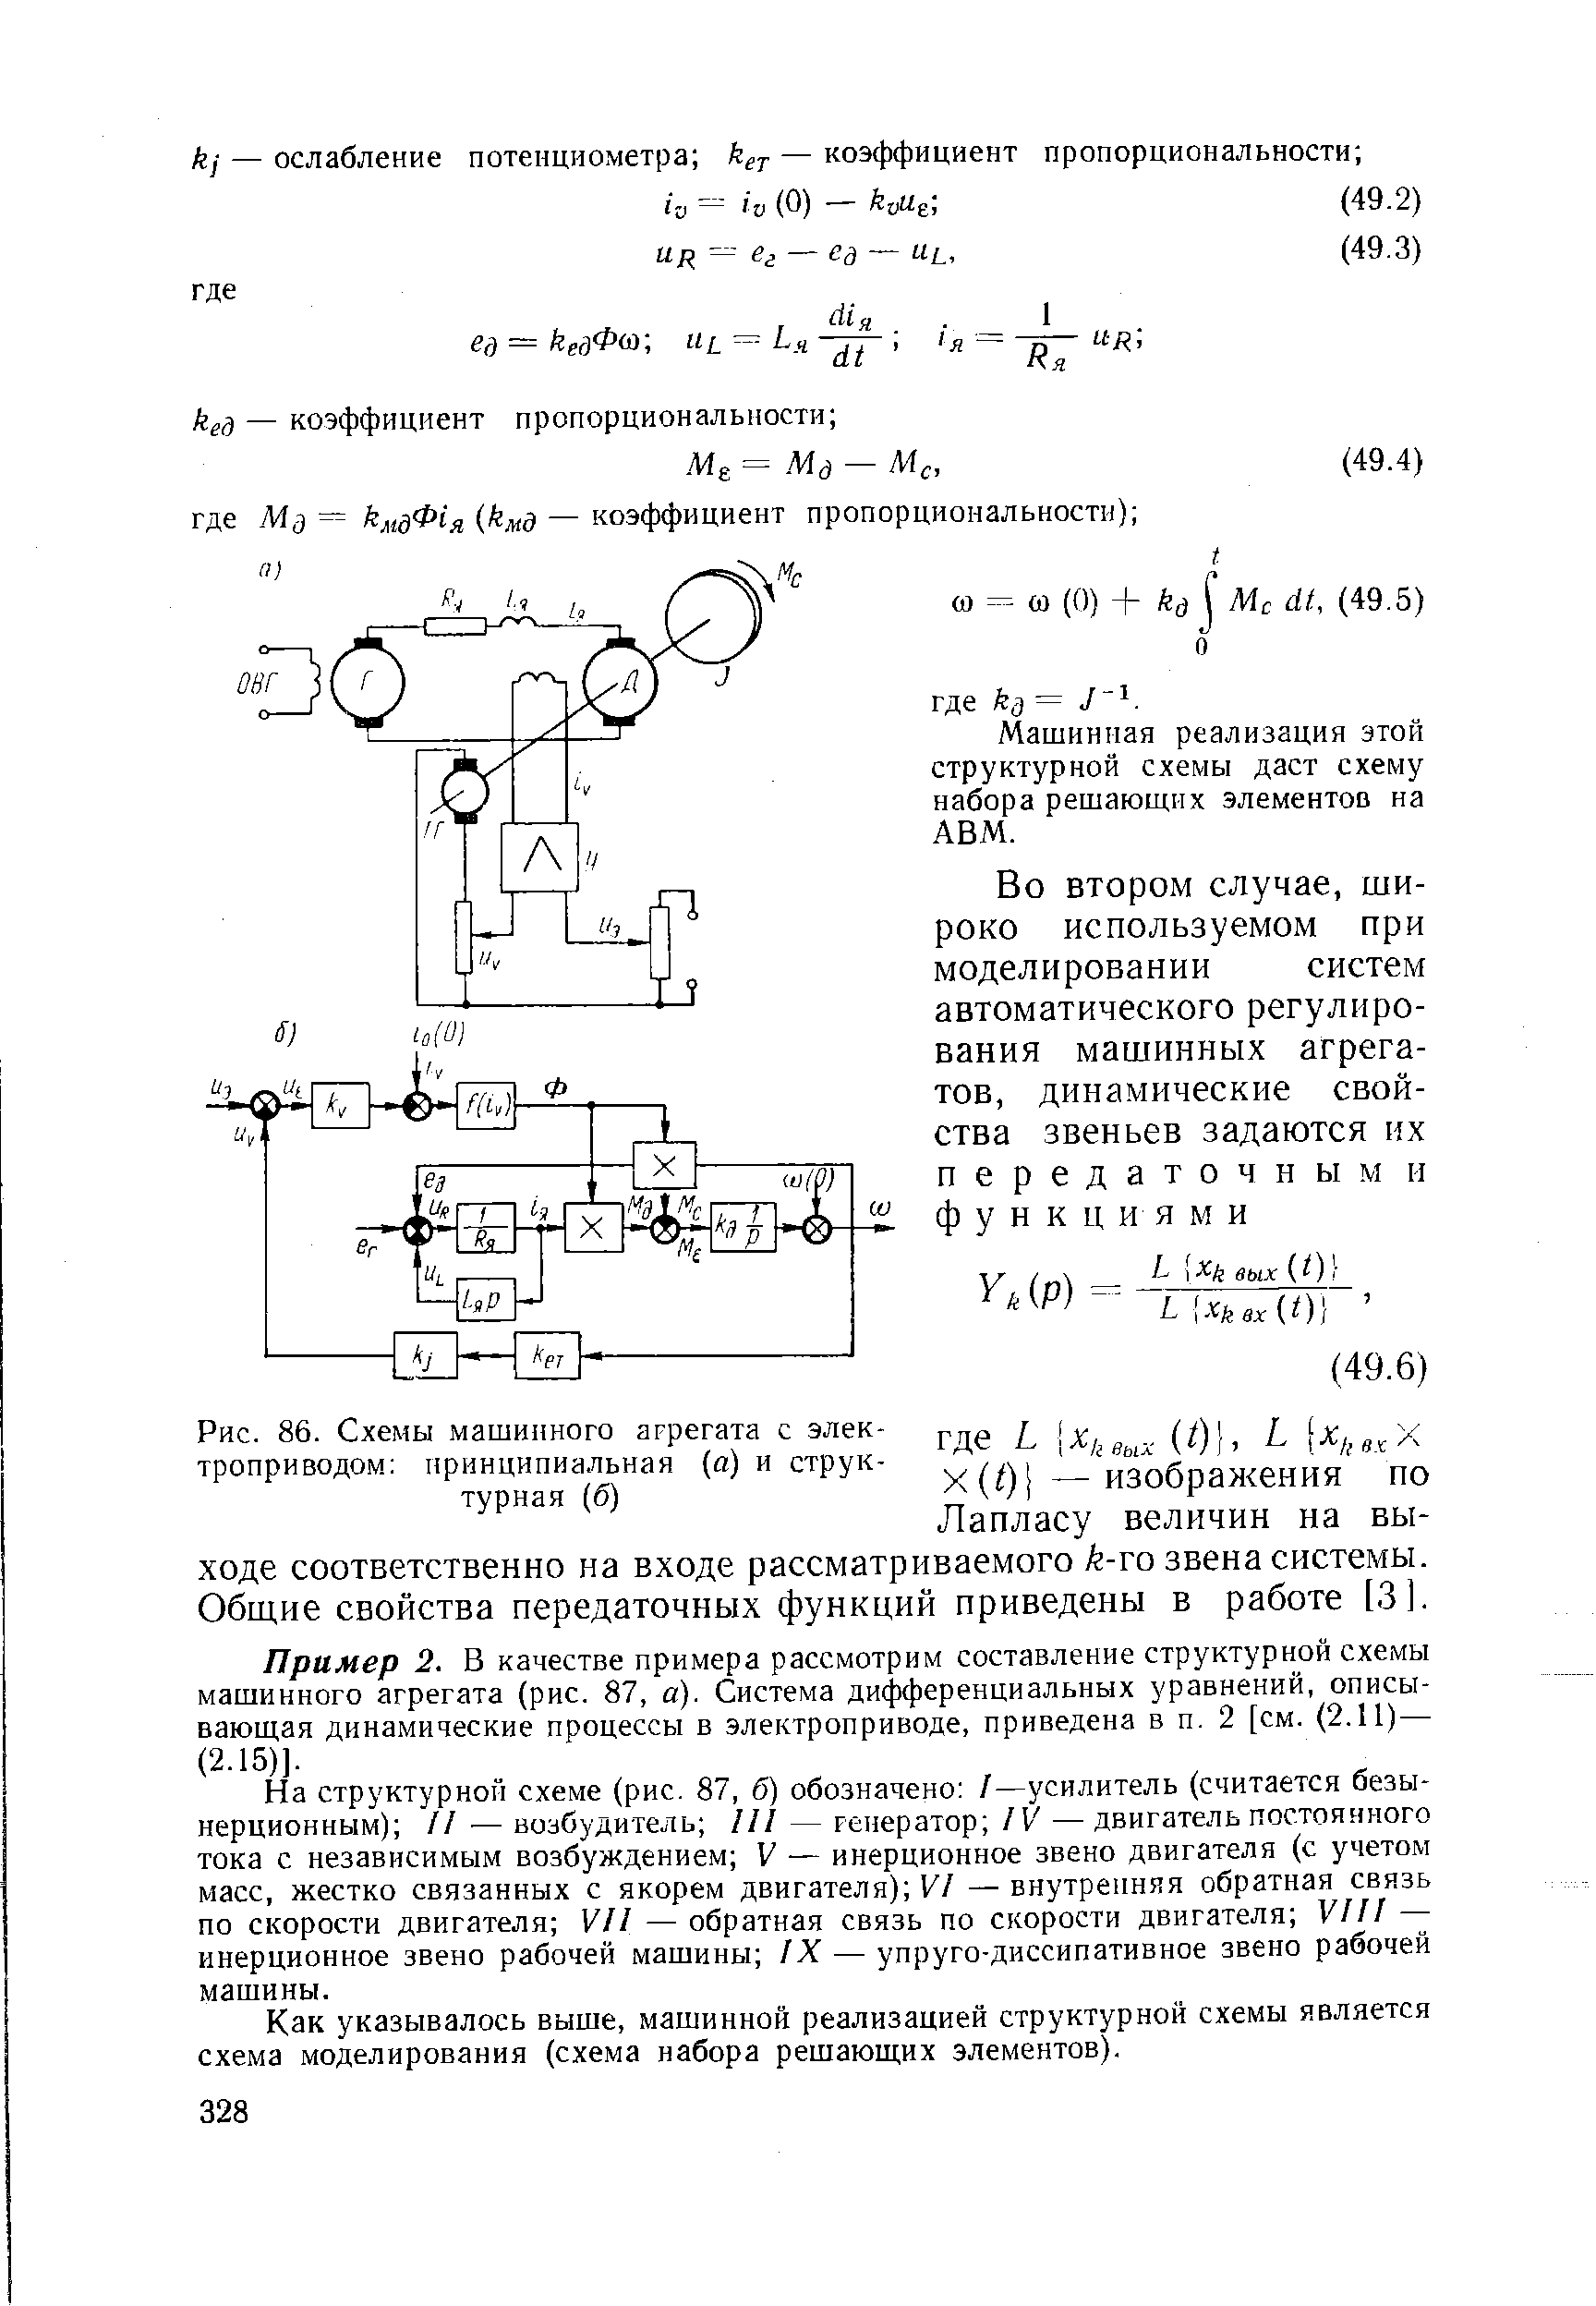 Рис. 86. Схемы машинного агрегата с электроприводом принципиальная (а) и структурная (б)
